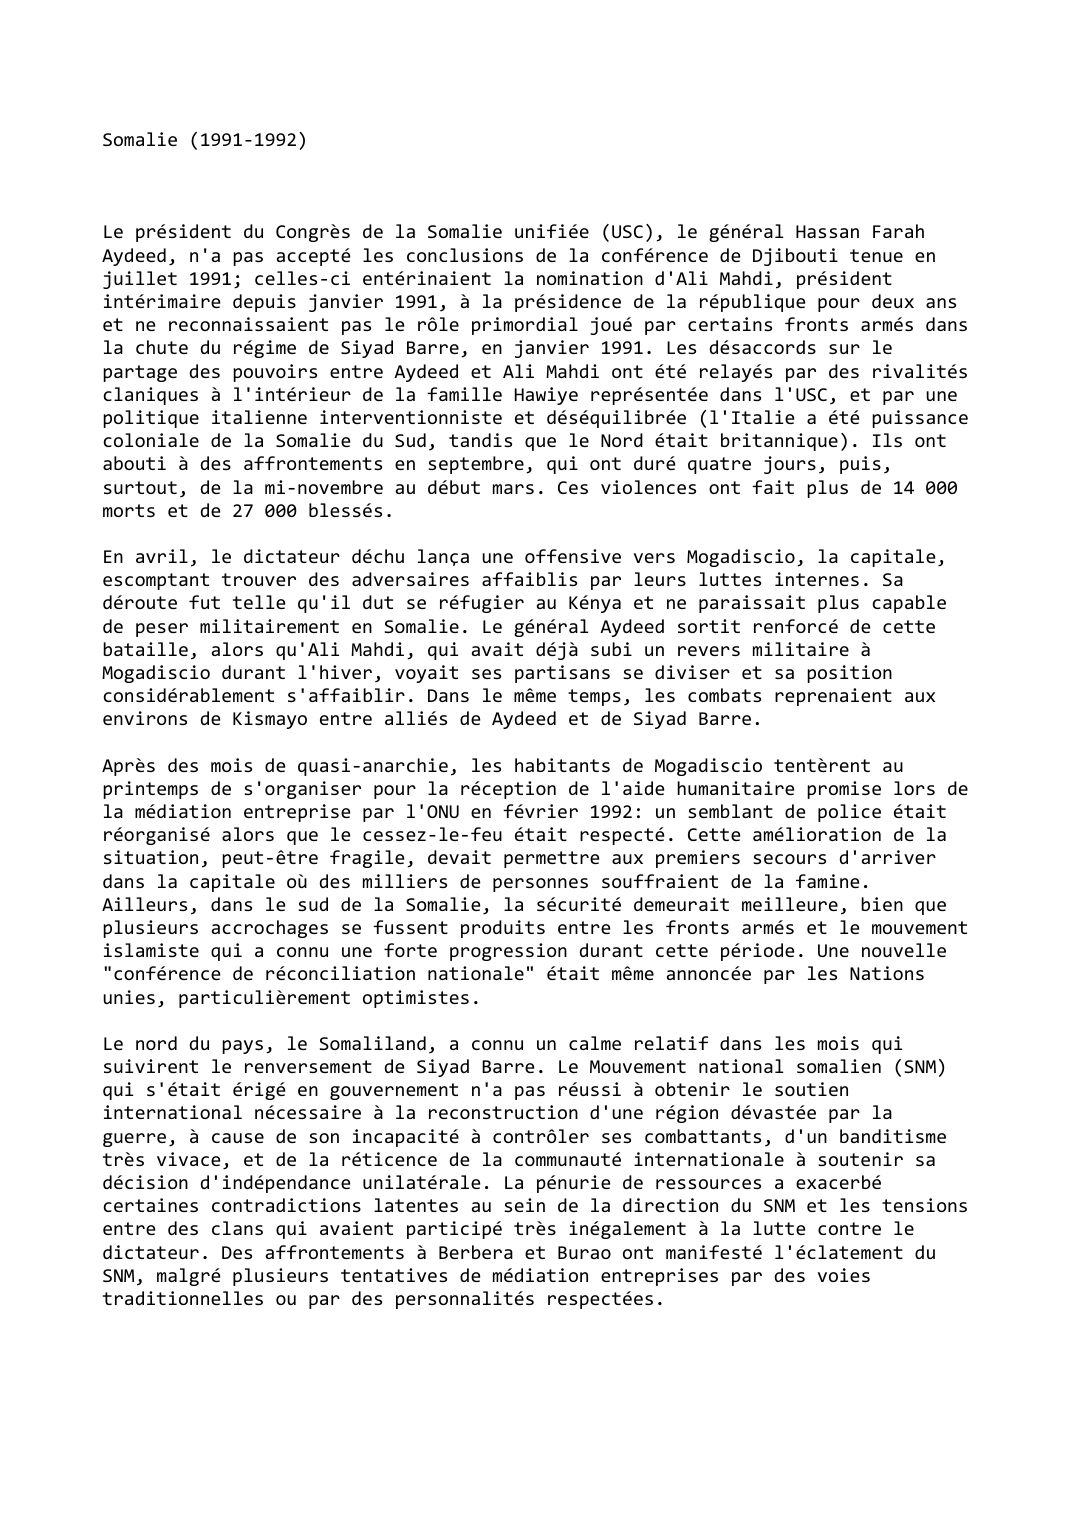 Prévisualisation du document Somalie (1991-1992)